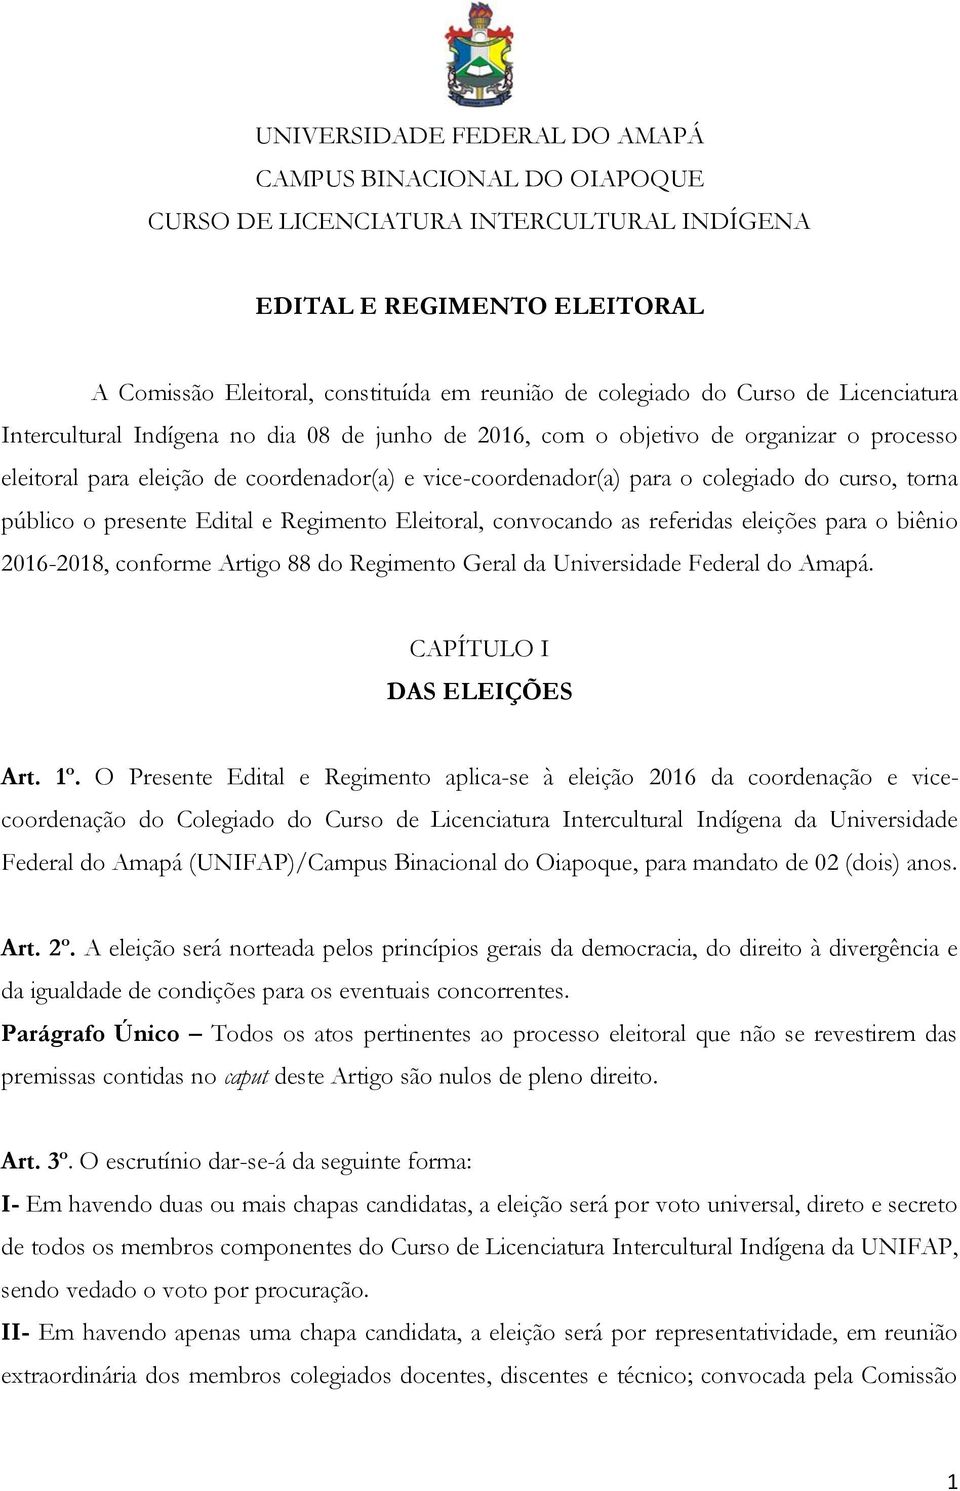 curso, torna público o presente Edital e Regimento Eleitoral, convocando as referidas eleições para o biênio 2016-2018, conforme Artigo 88 do Regimento Geral da Universidade Federal do Amapá.